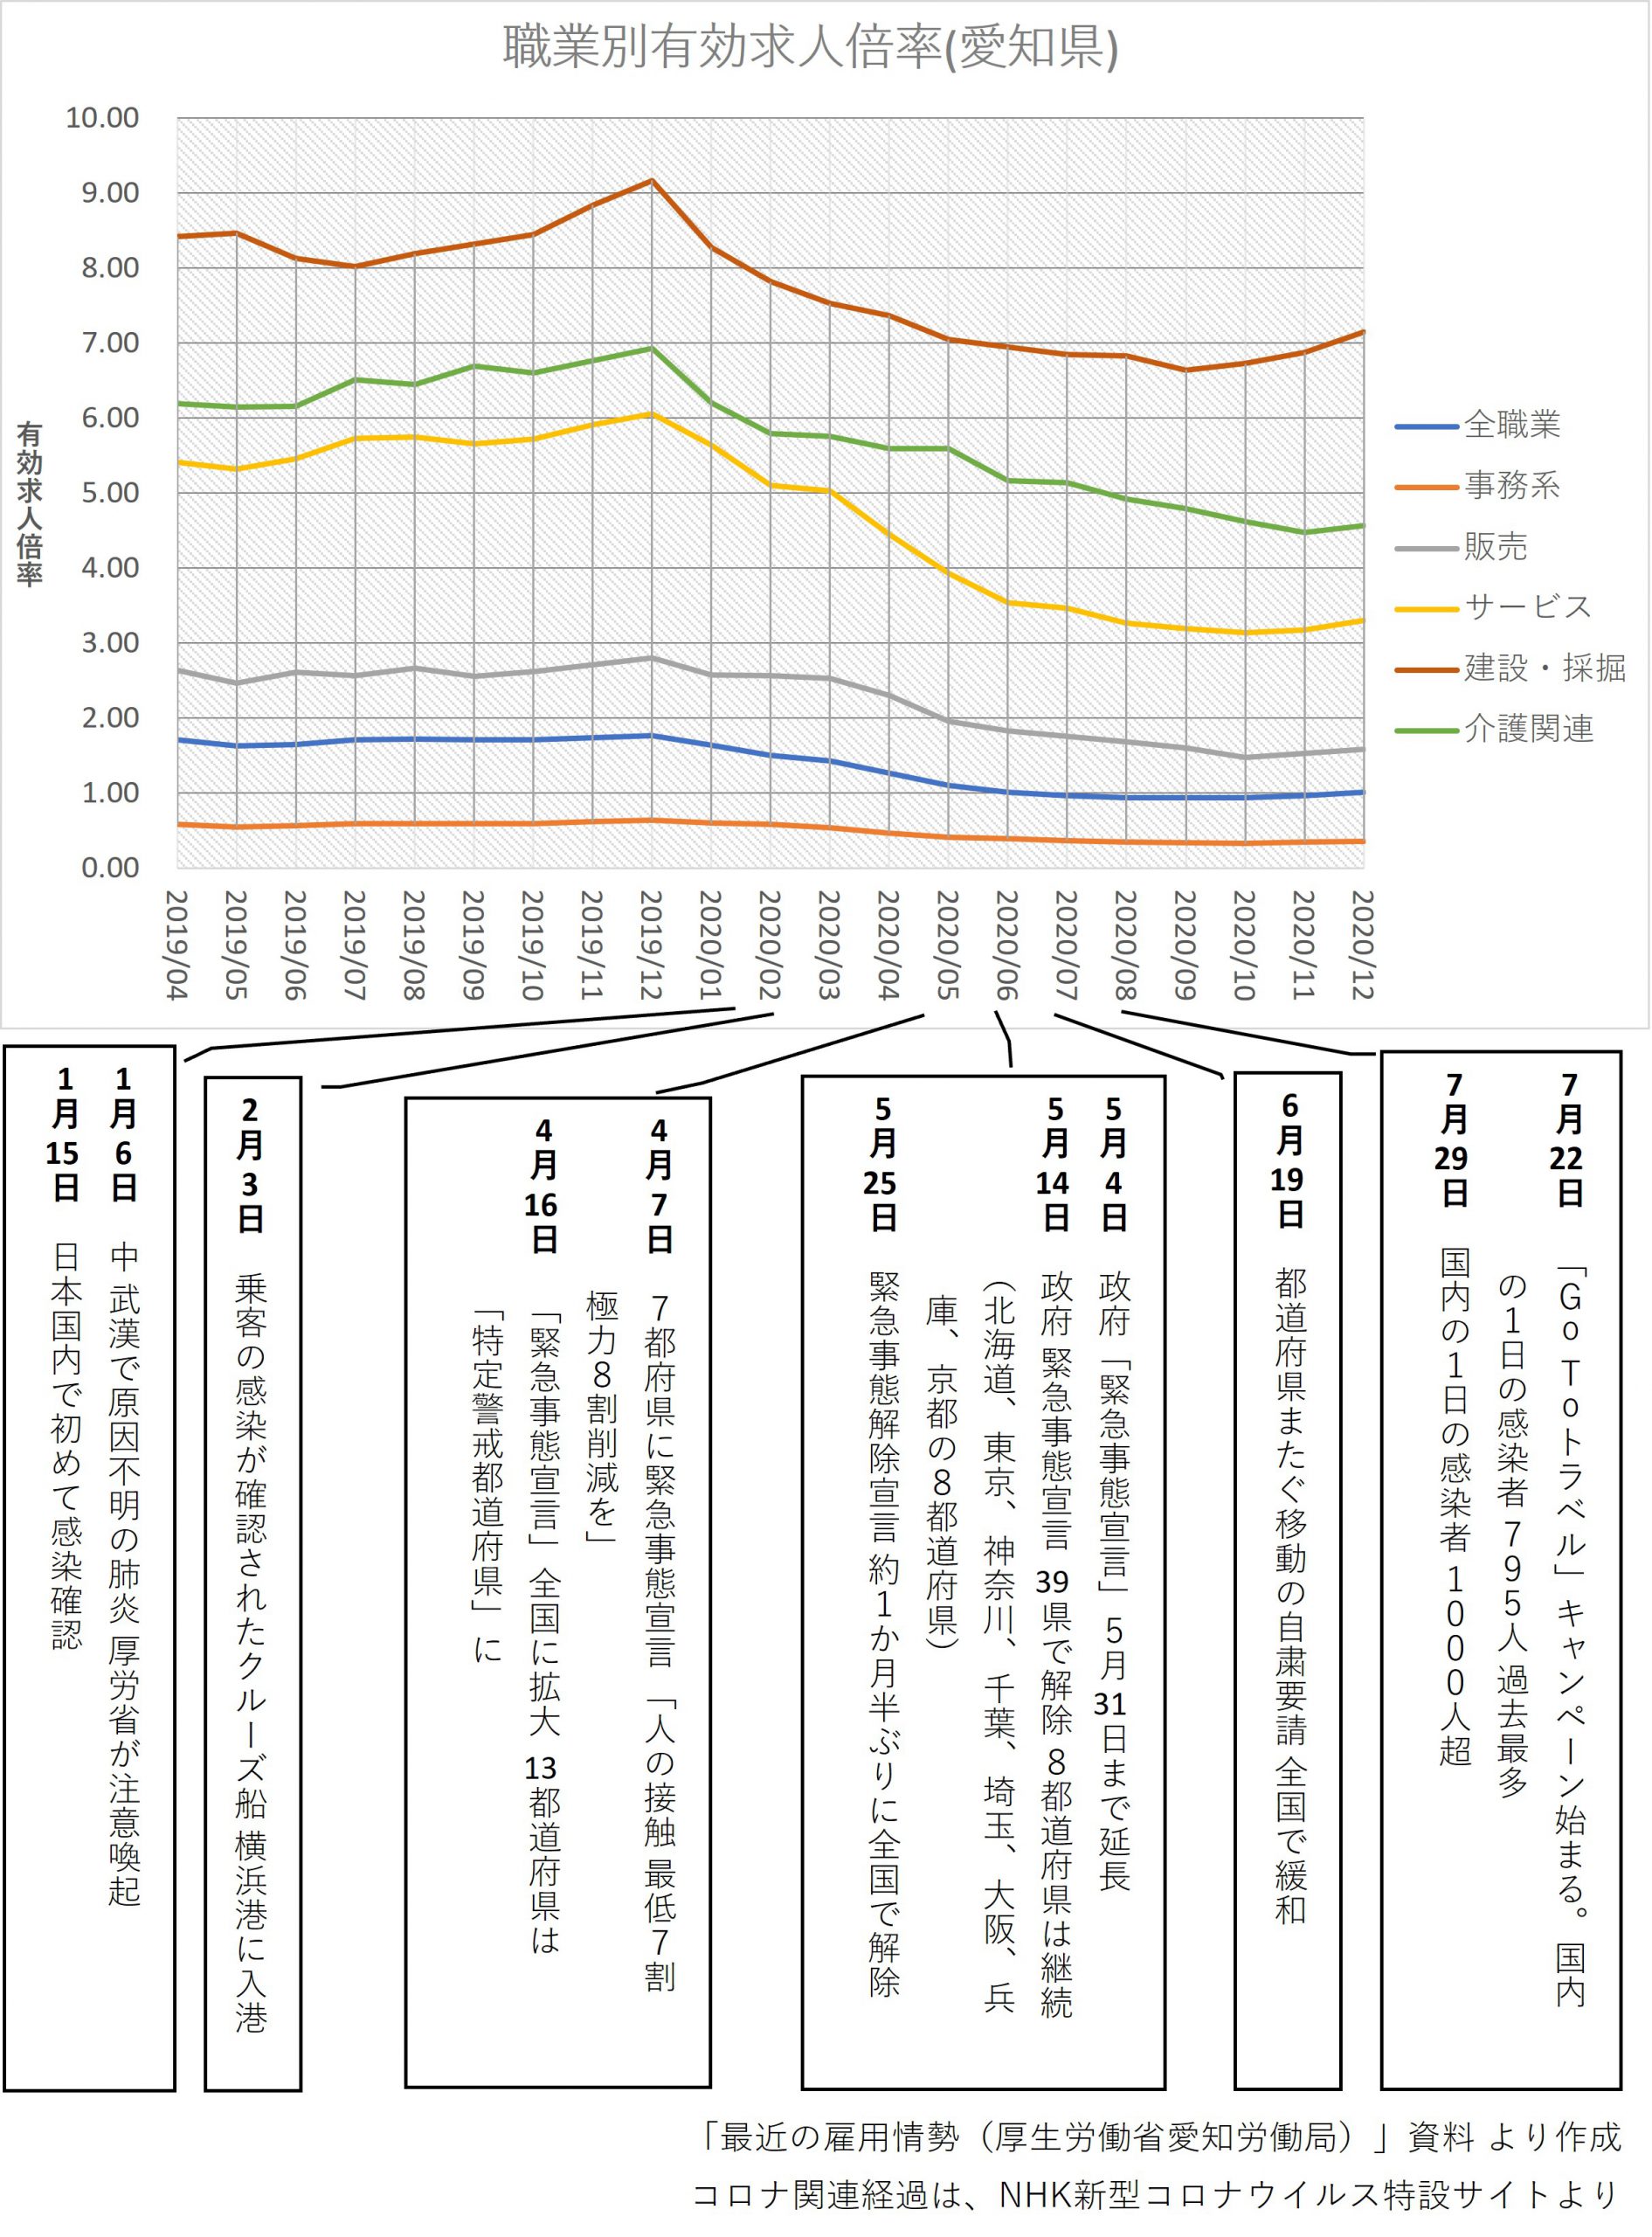 新型コロナウイルス感染拡大と愛知県における職業別雇用状況の推移